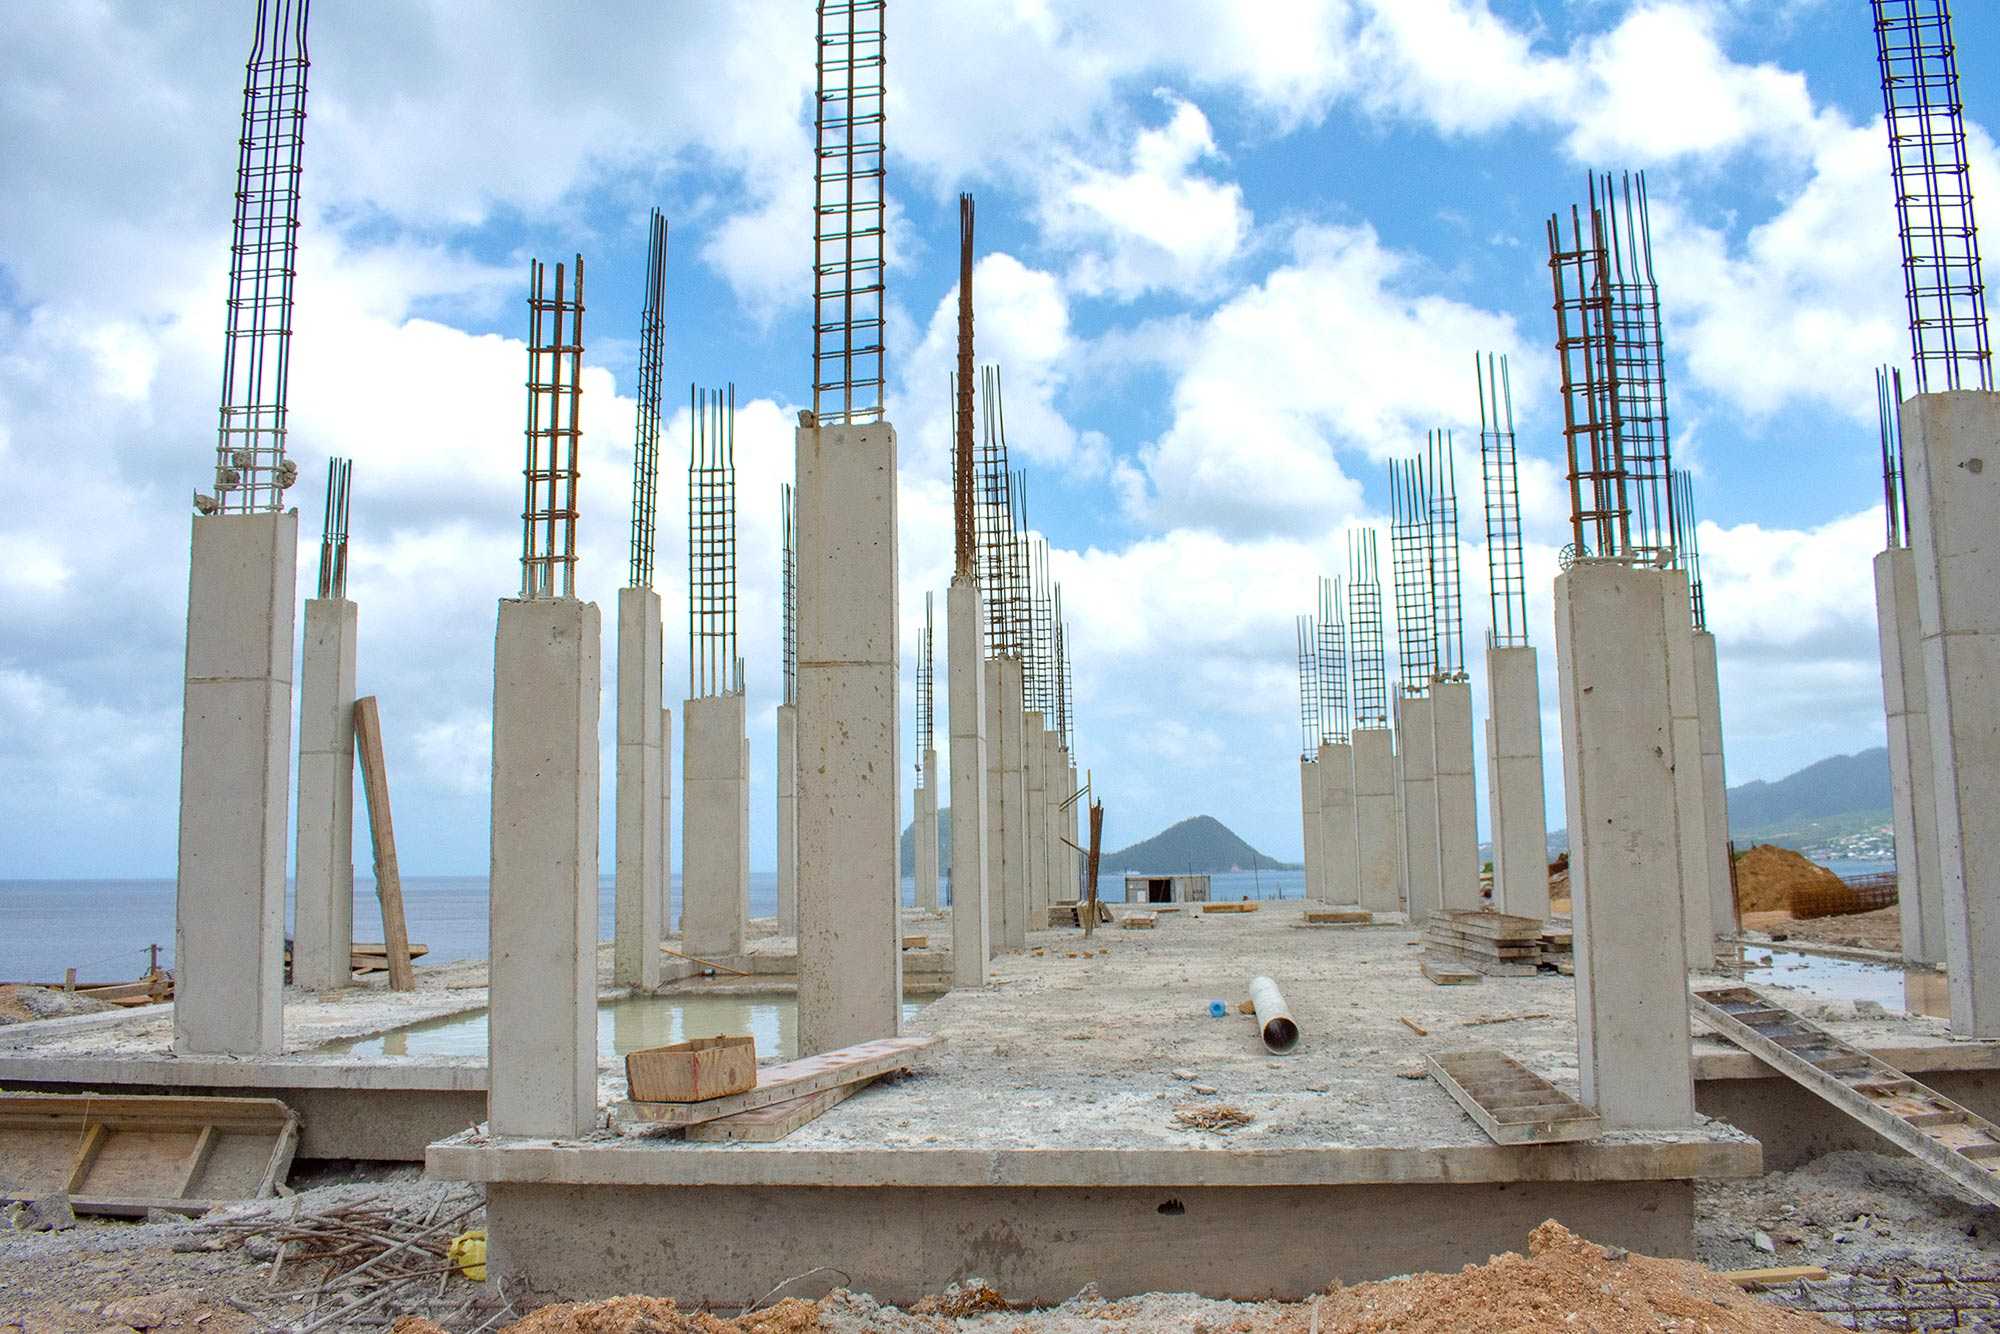 Бетонные колонны представляют собой несущие конструкции, обеспечивающие зданиям вертикальную жесткость Их вполне реально соорудить своими руками, соблюдая технологию приготовления смеси, монтажа опалубки